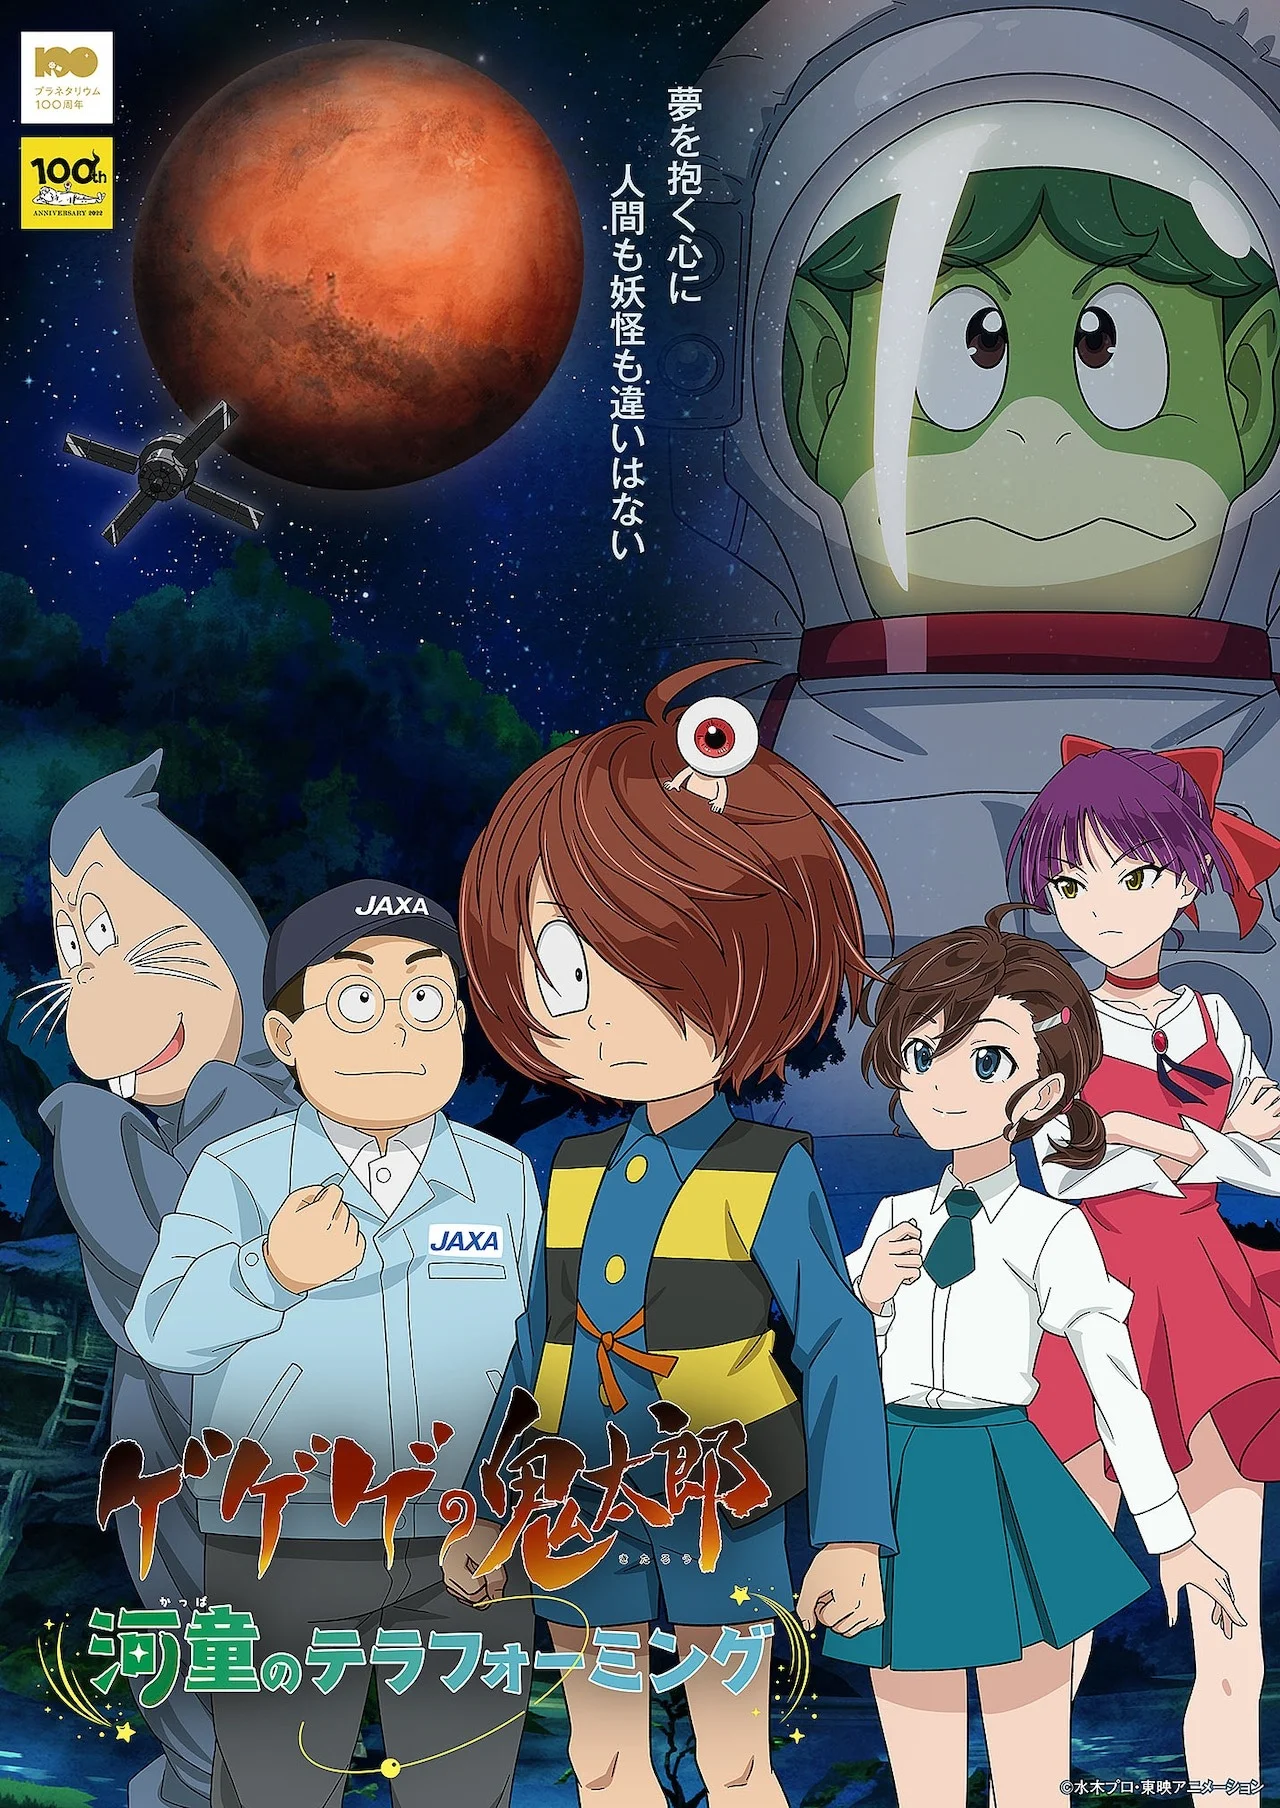 В Японии сделают аниме для показа в планетариях и научных музеях - фото 1